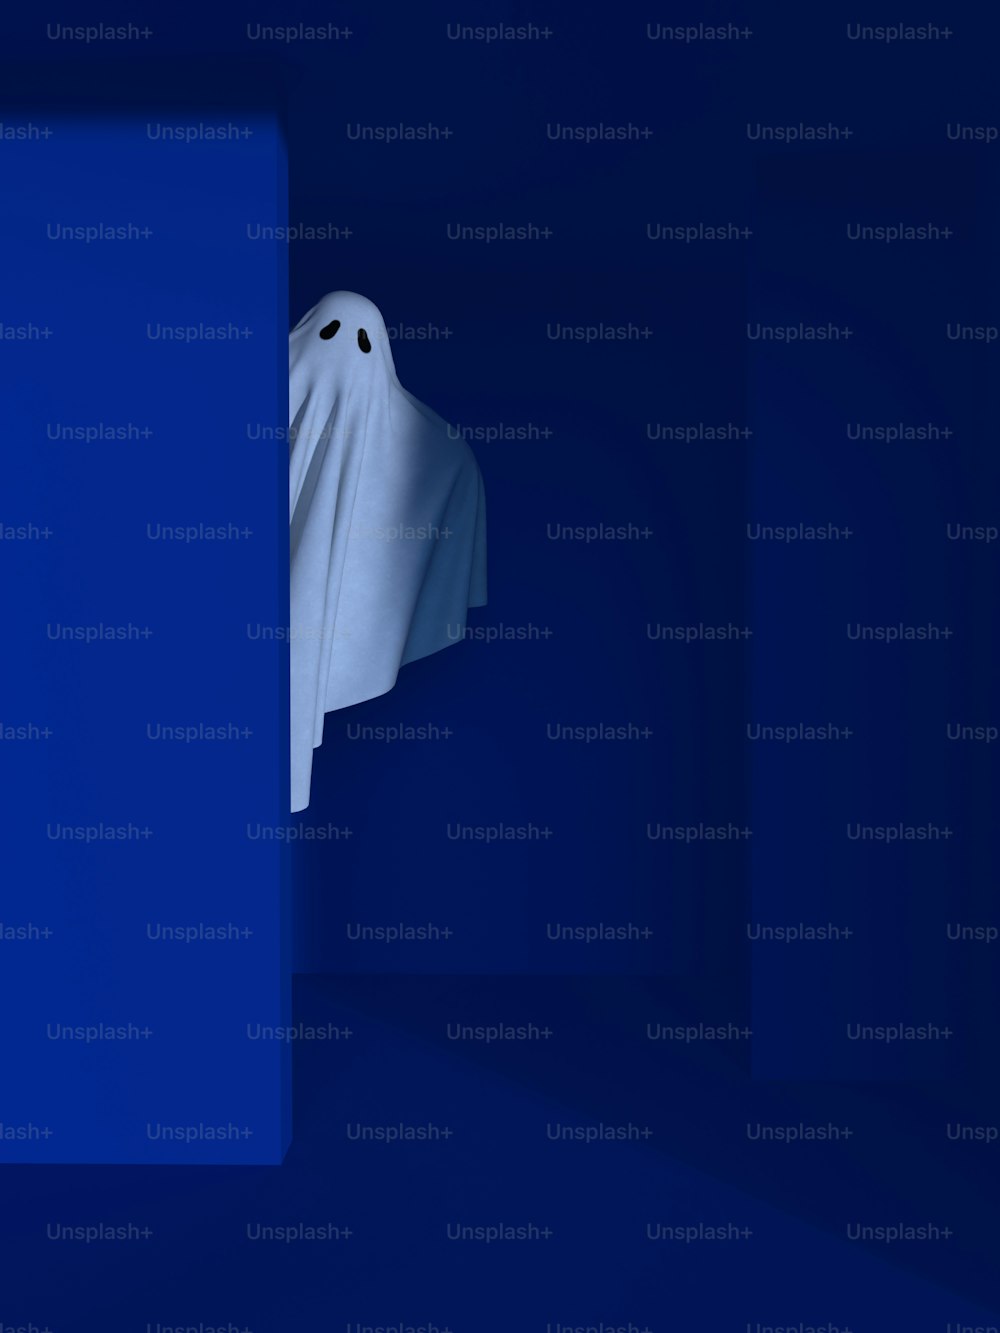 Ein weißes Gespenst lugt aus einer blauen Wand hervor